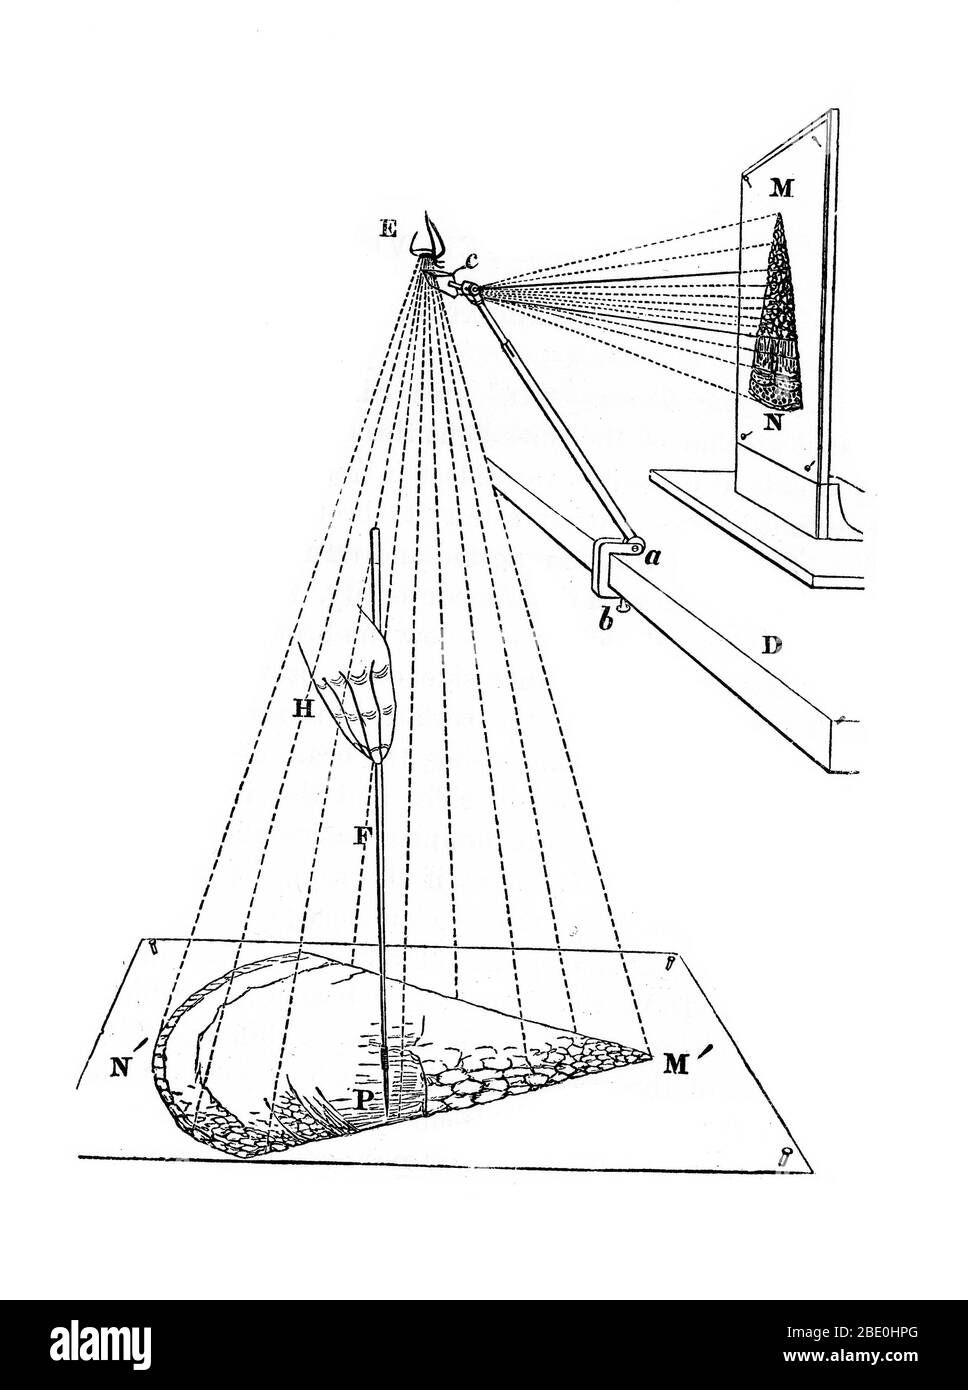 Die Kamera lucida, die für mikroskopische Zeichnungen verwendet wird, 1855 Stockfoto